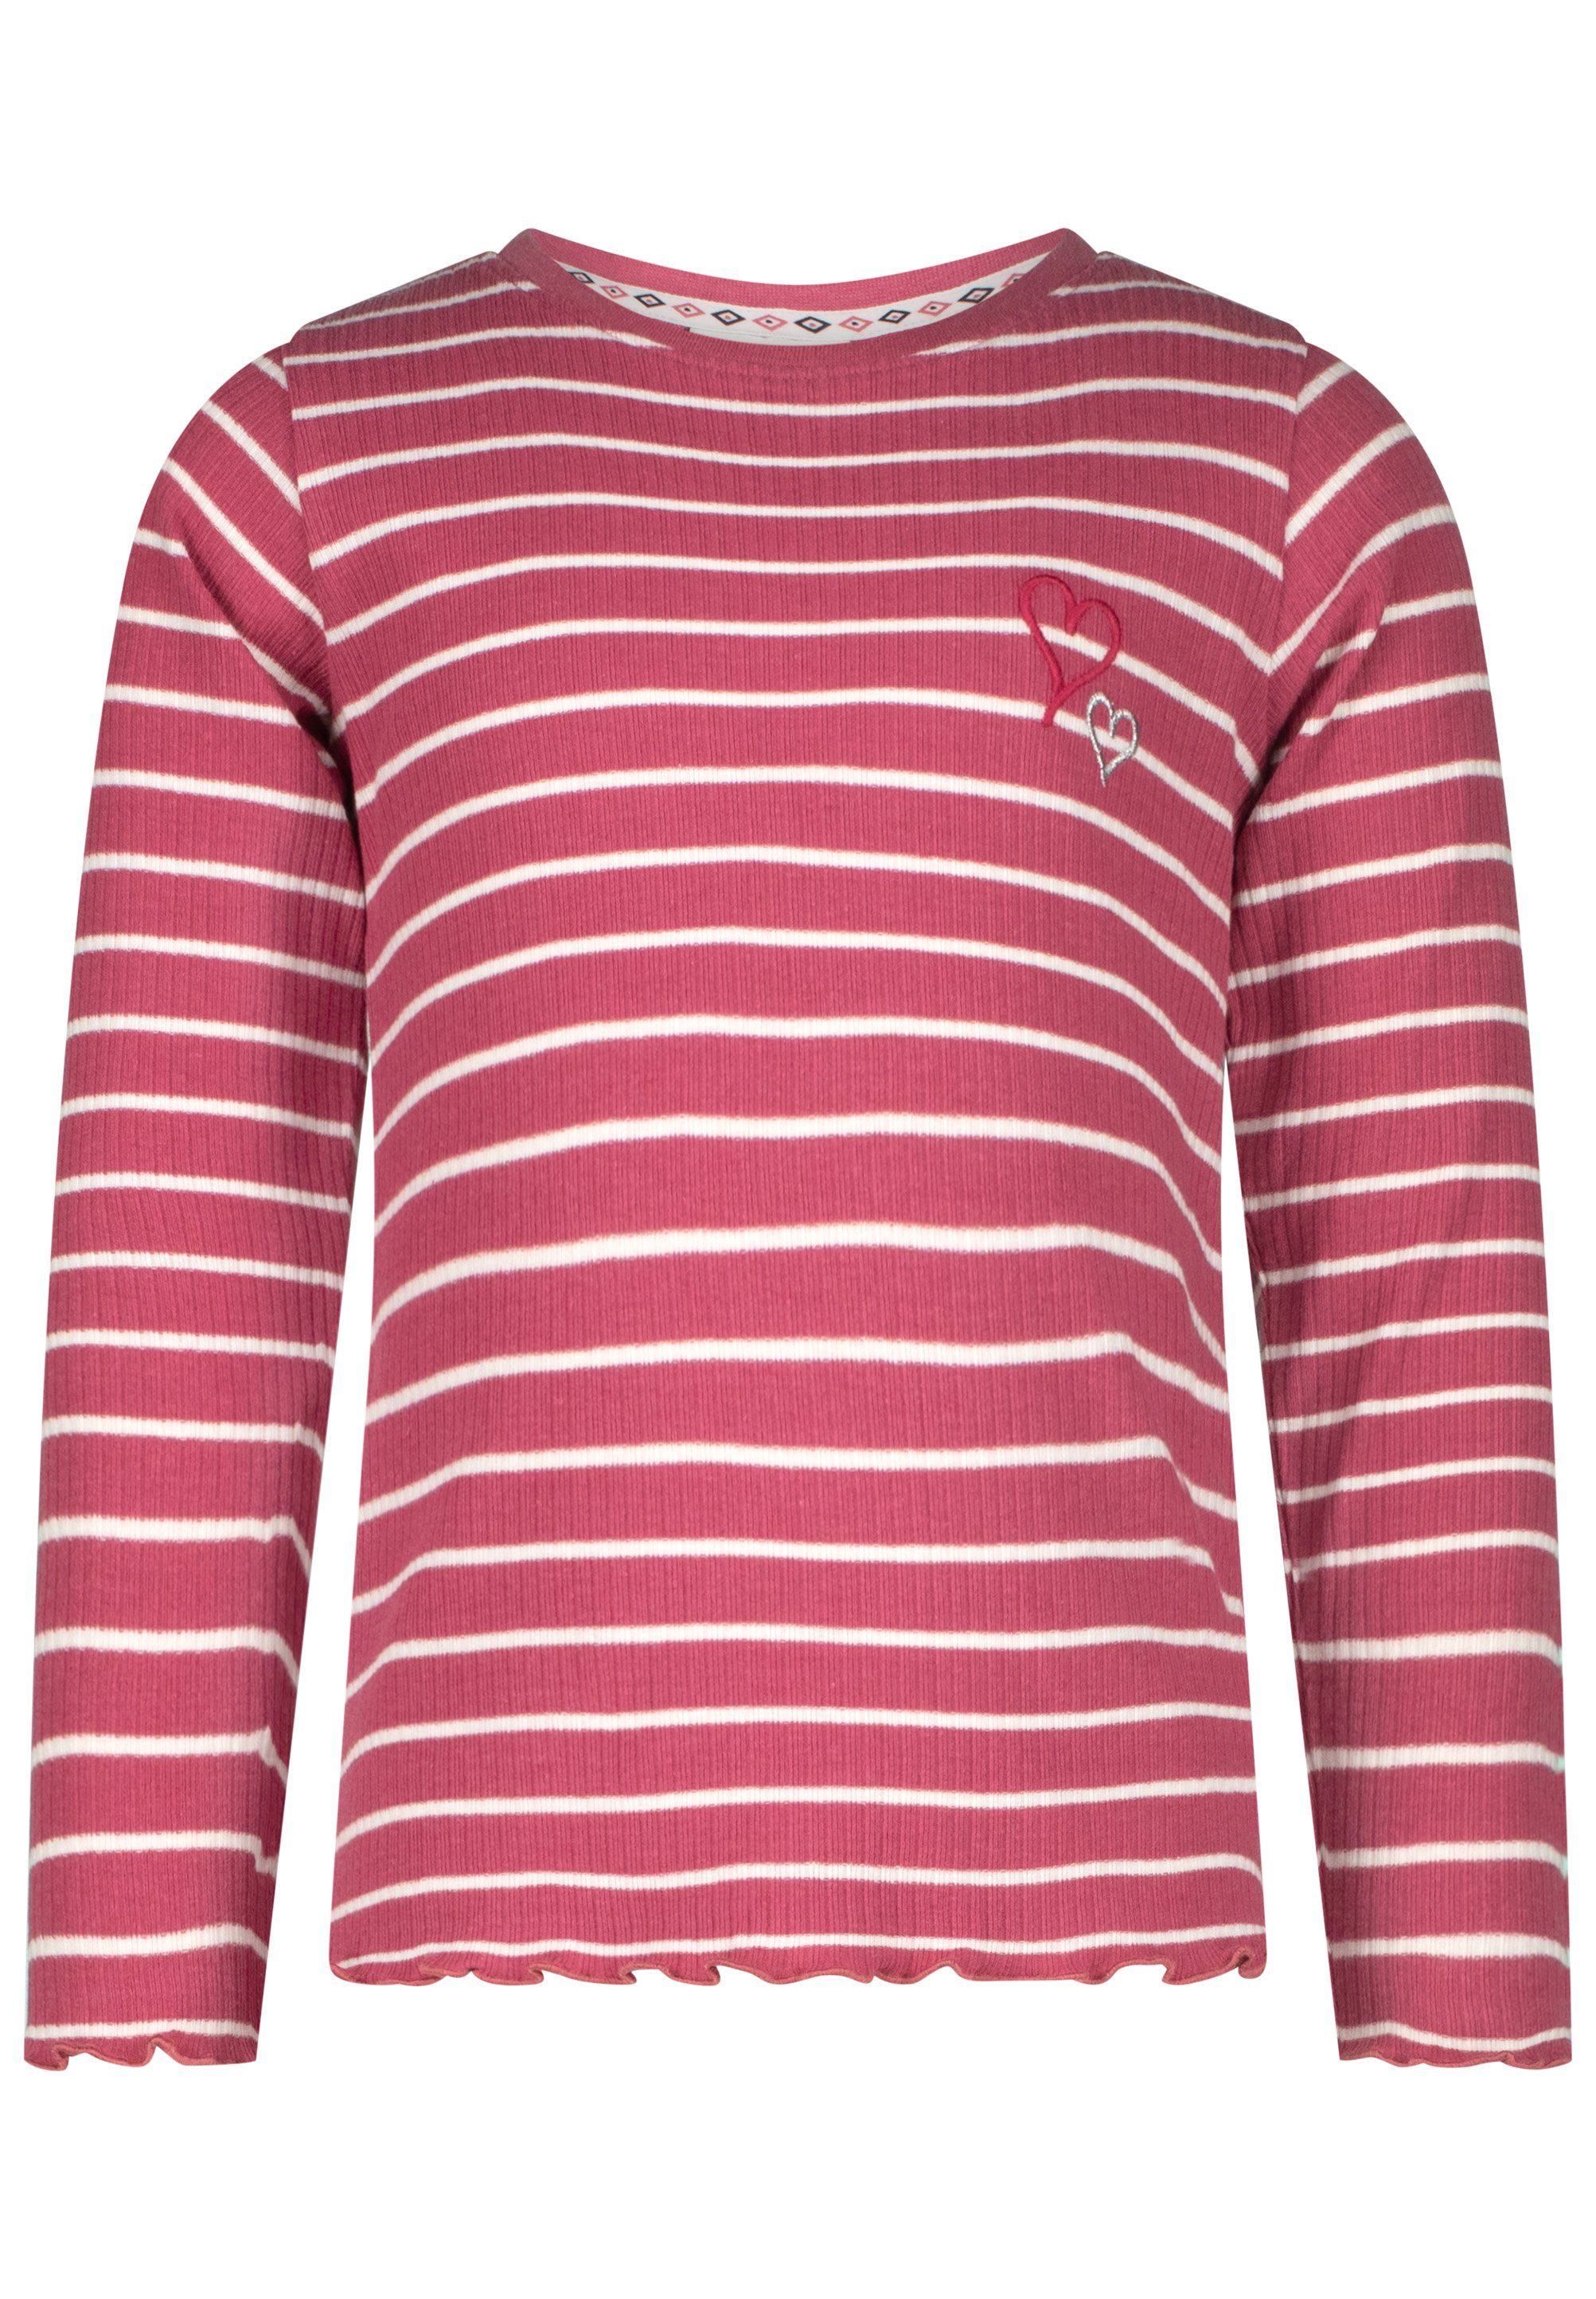 SALT AND PEPPER Langarmshirt Amazing mit trendigem Streifenmuster rosa, weiß